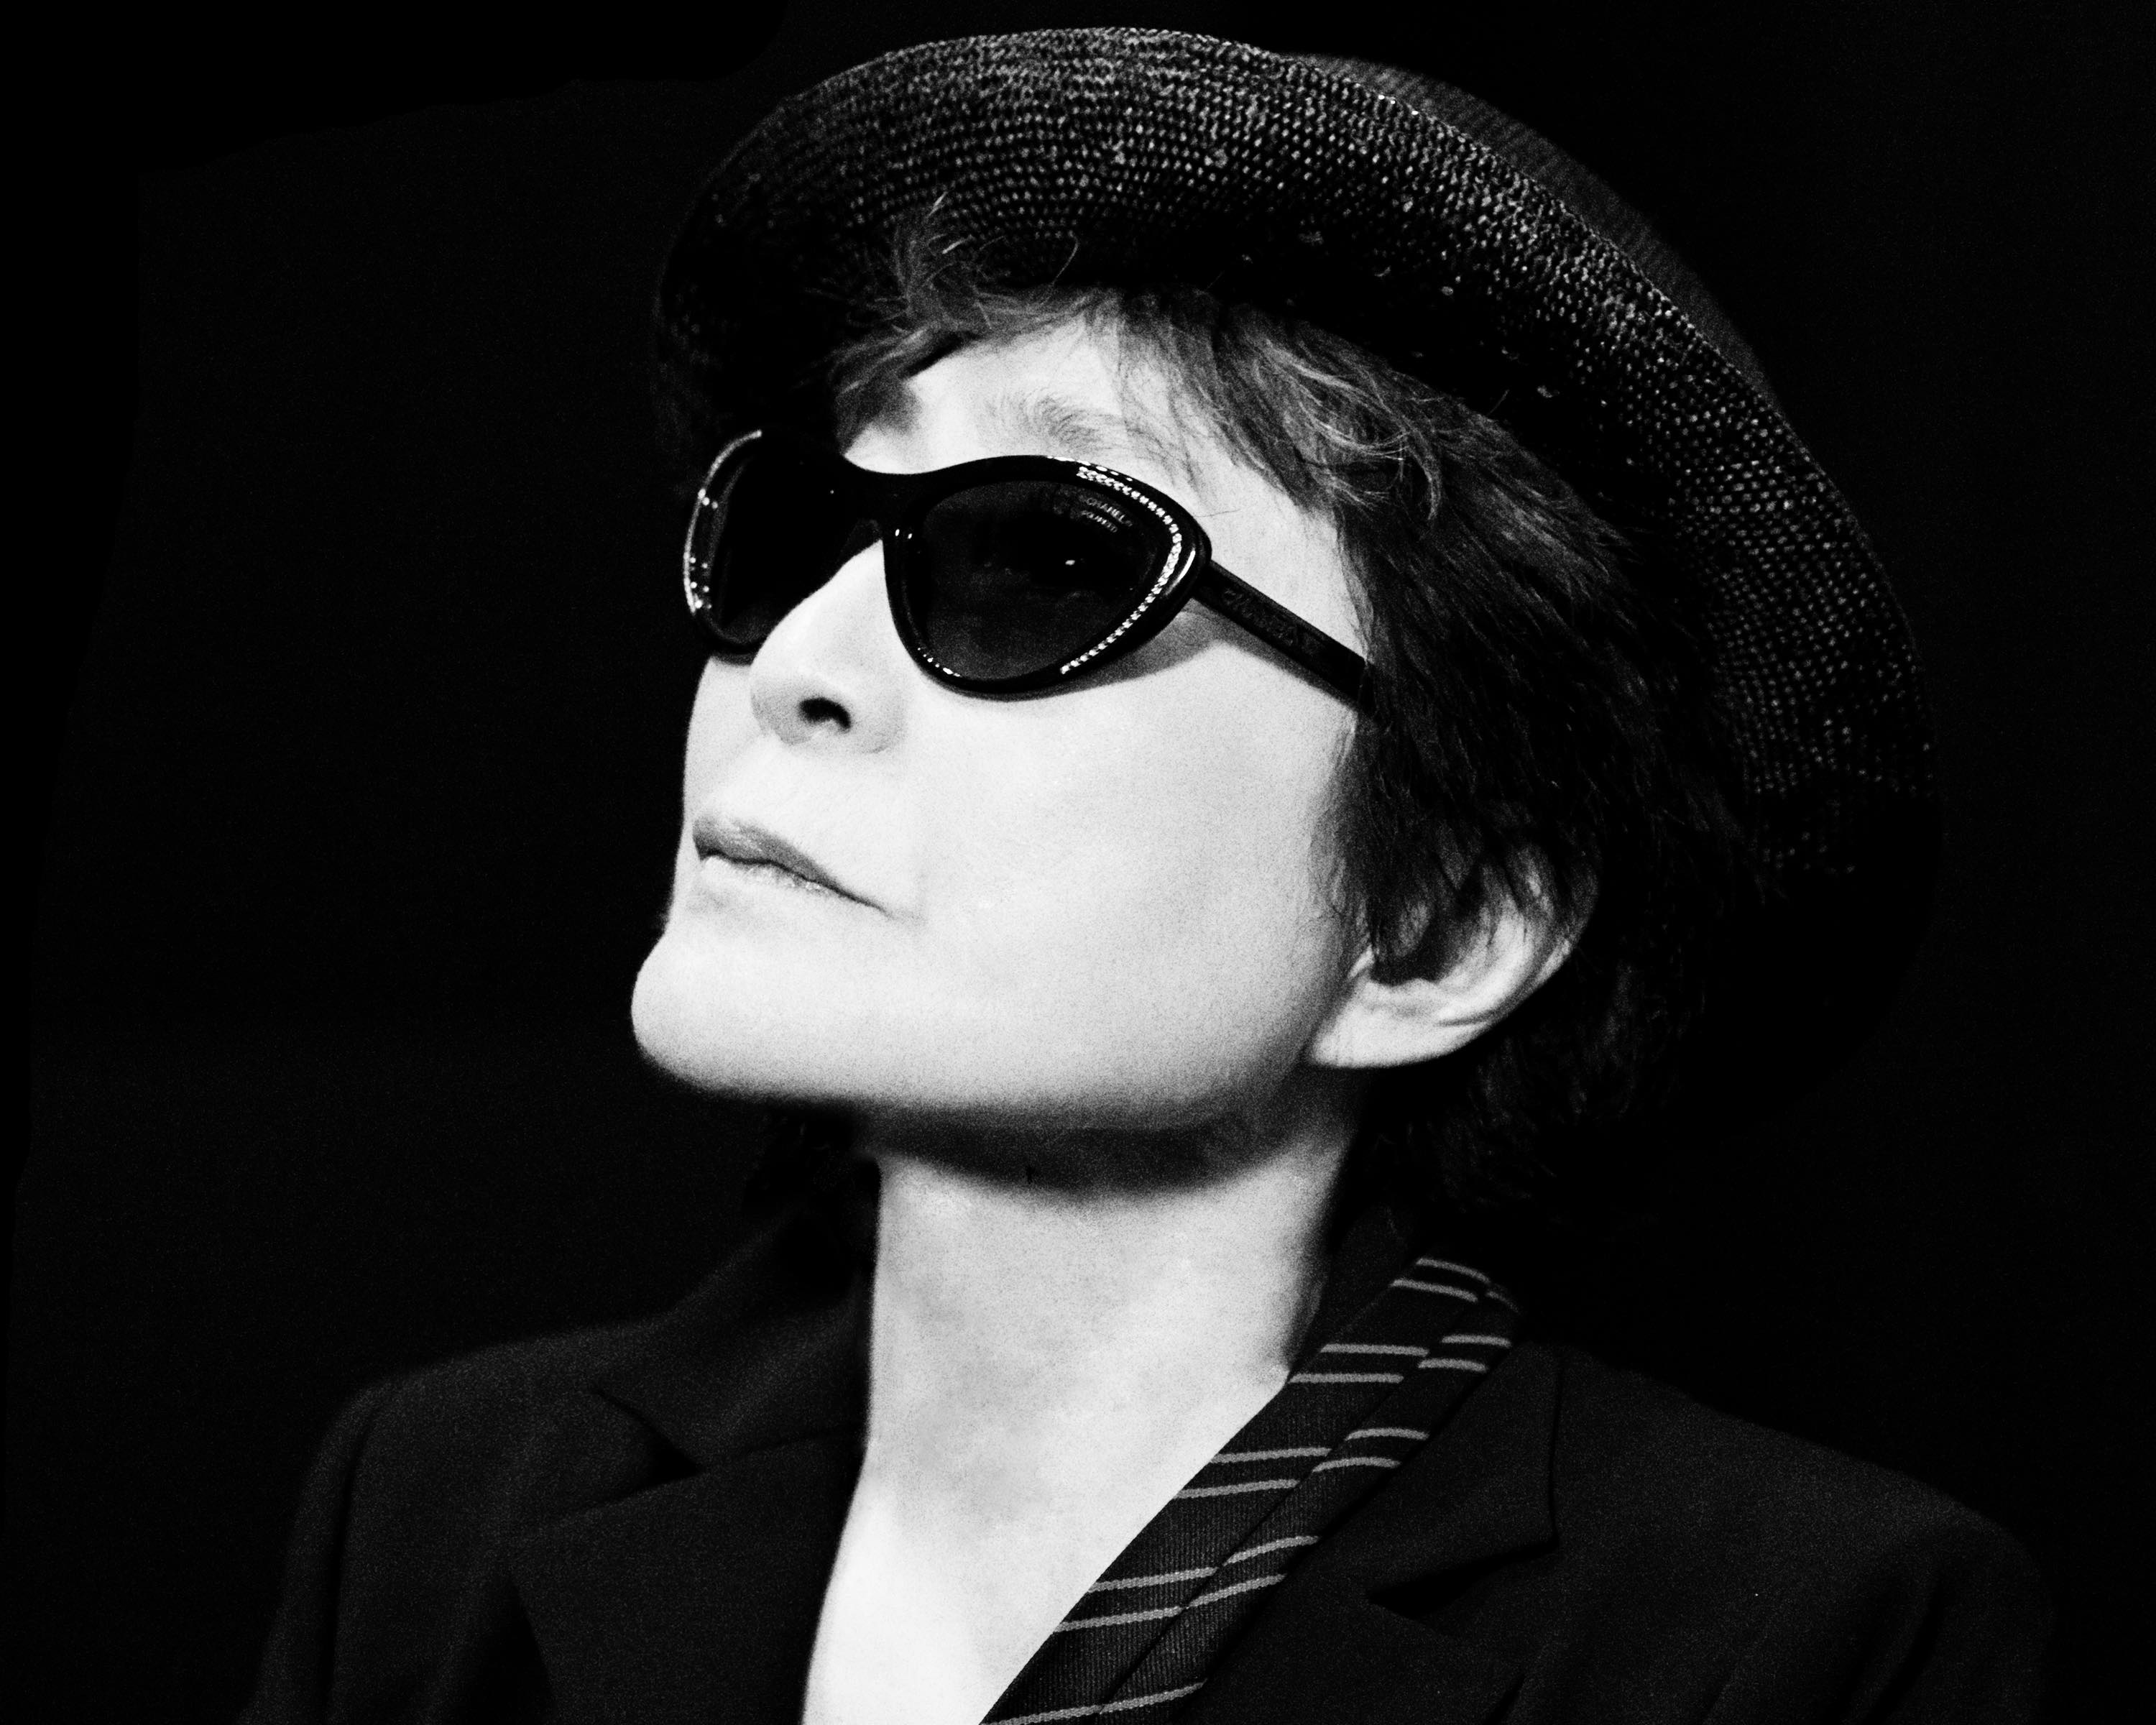 Yoko Ono portrait. Photo by Greg Kadel ©Yoko Ono